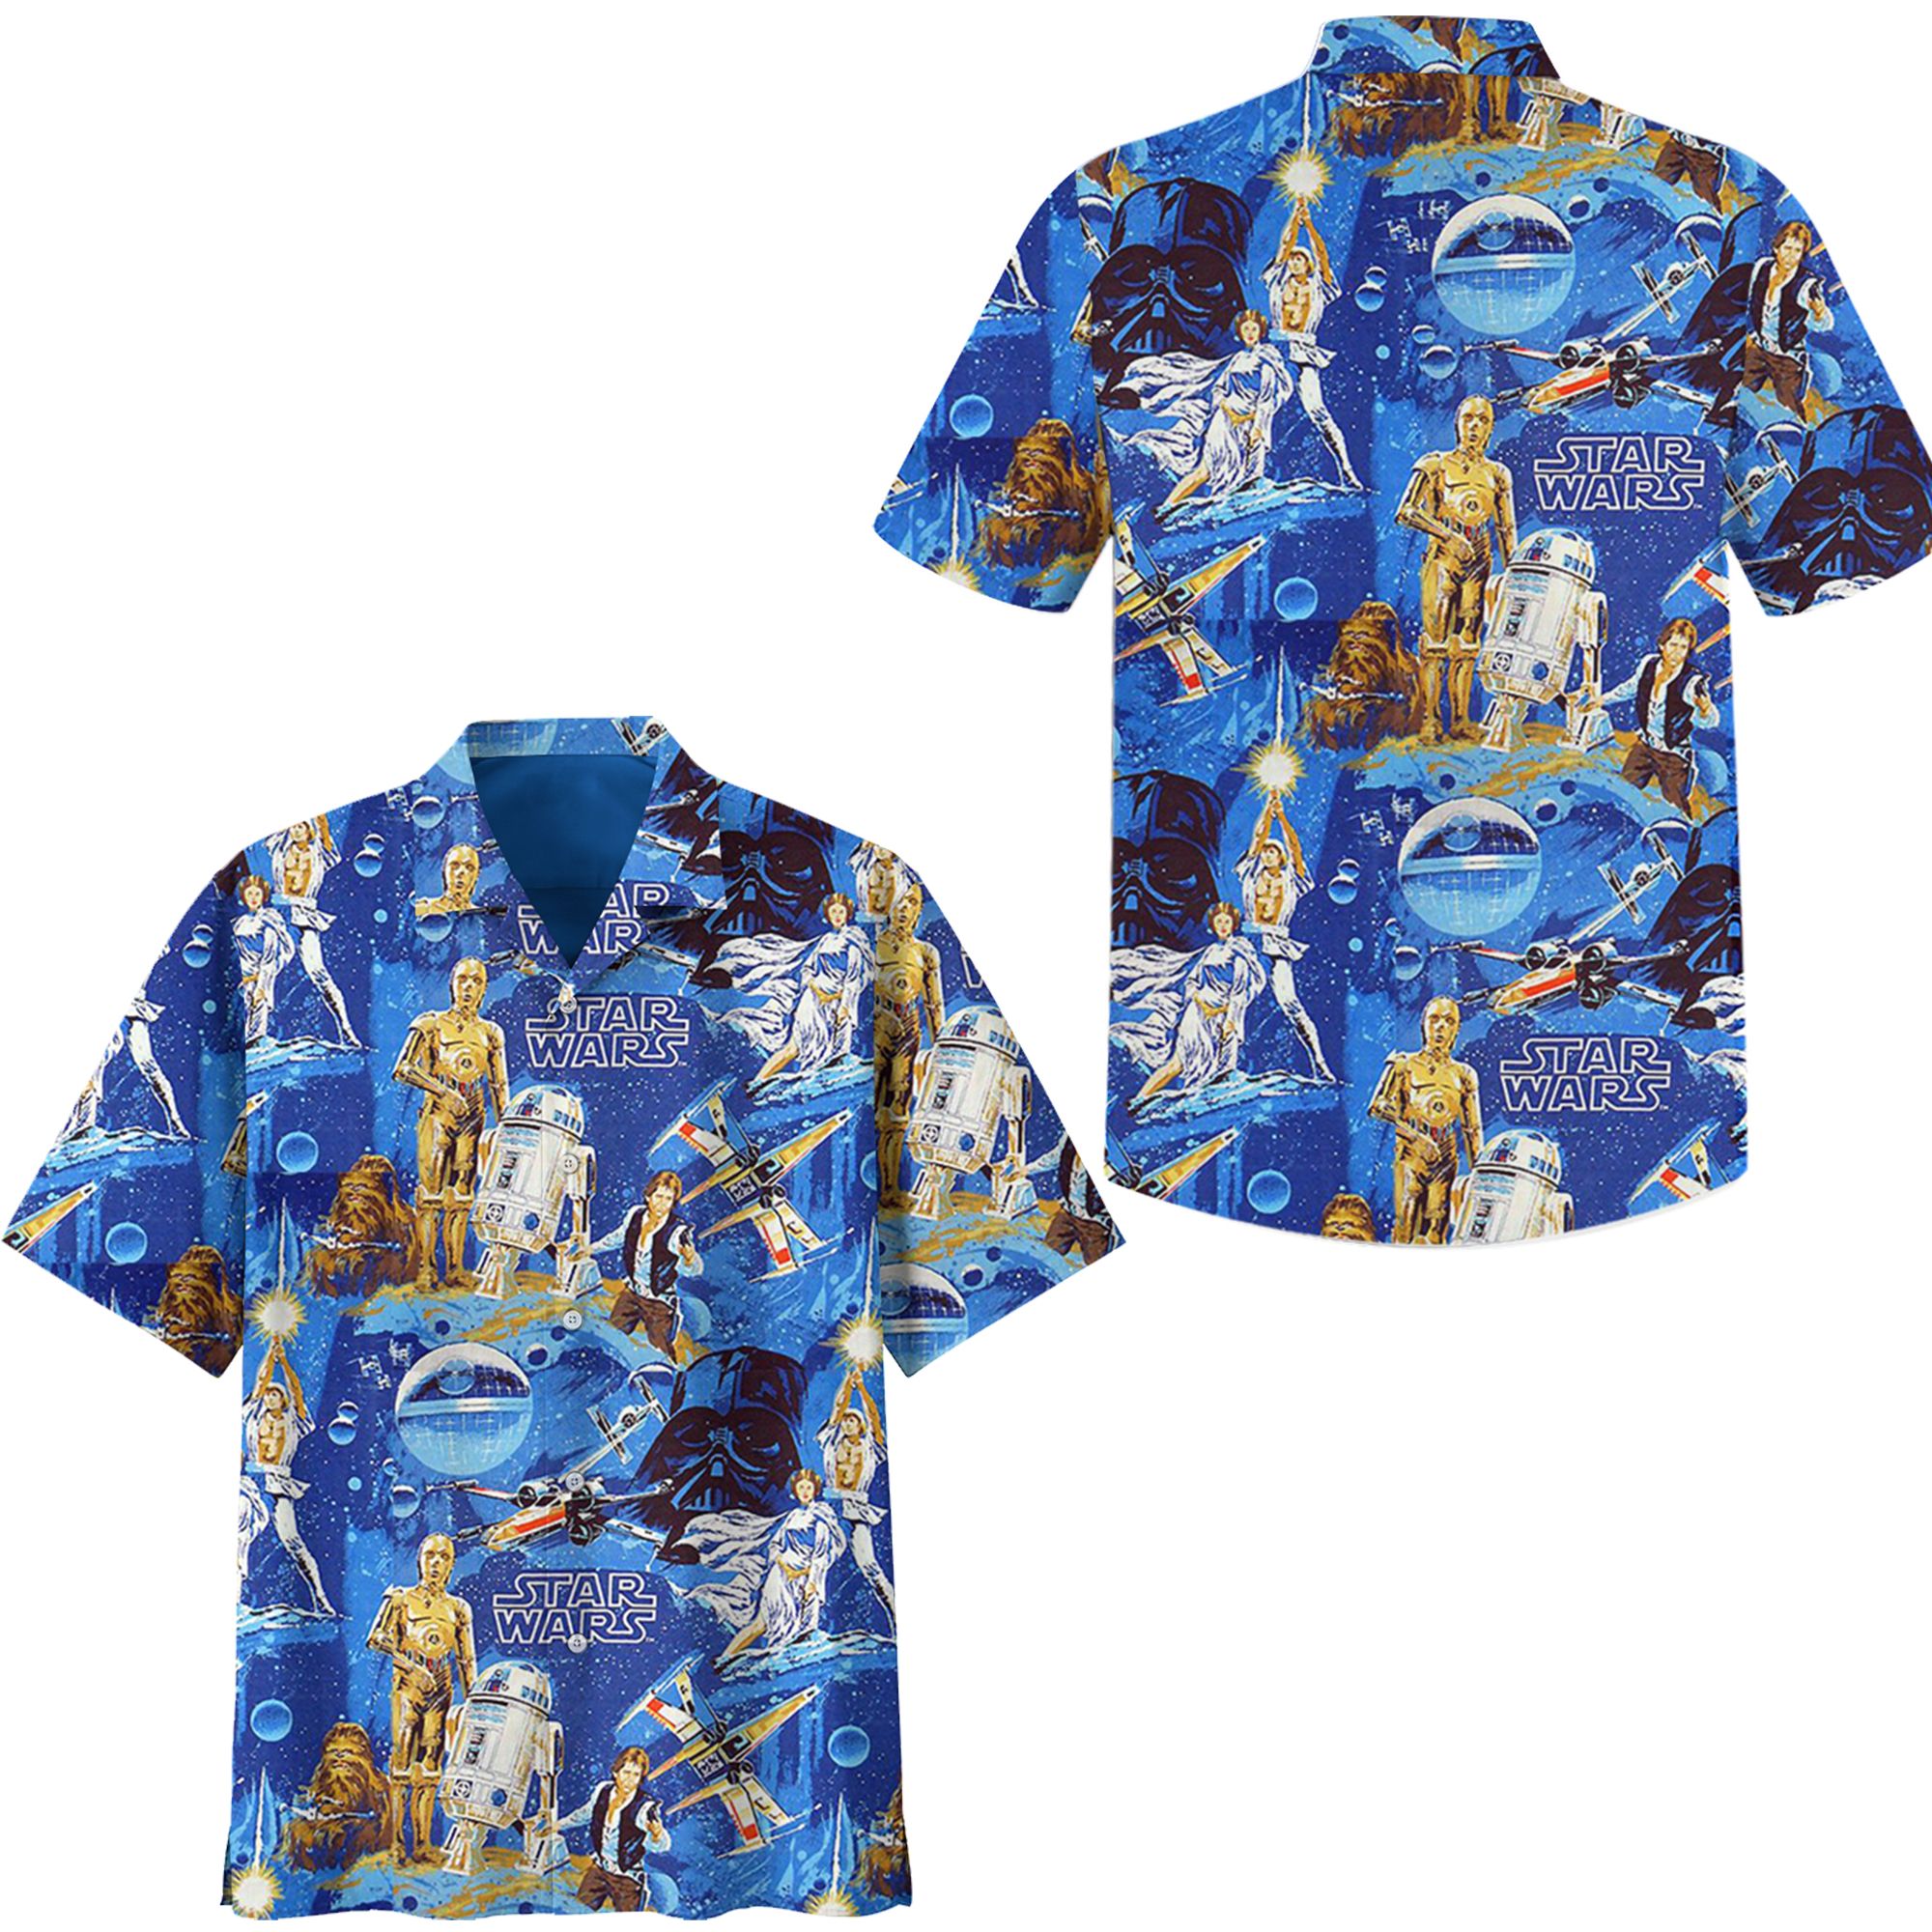 Star wars painting hawaiian shirt – Saleoff 050821